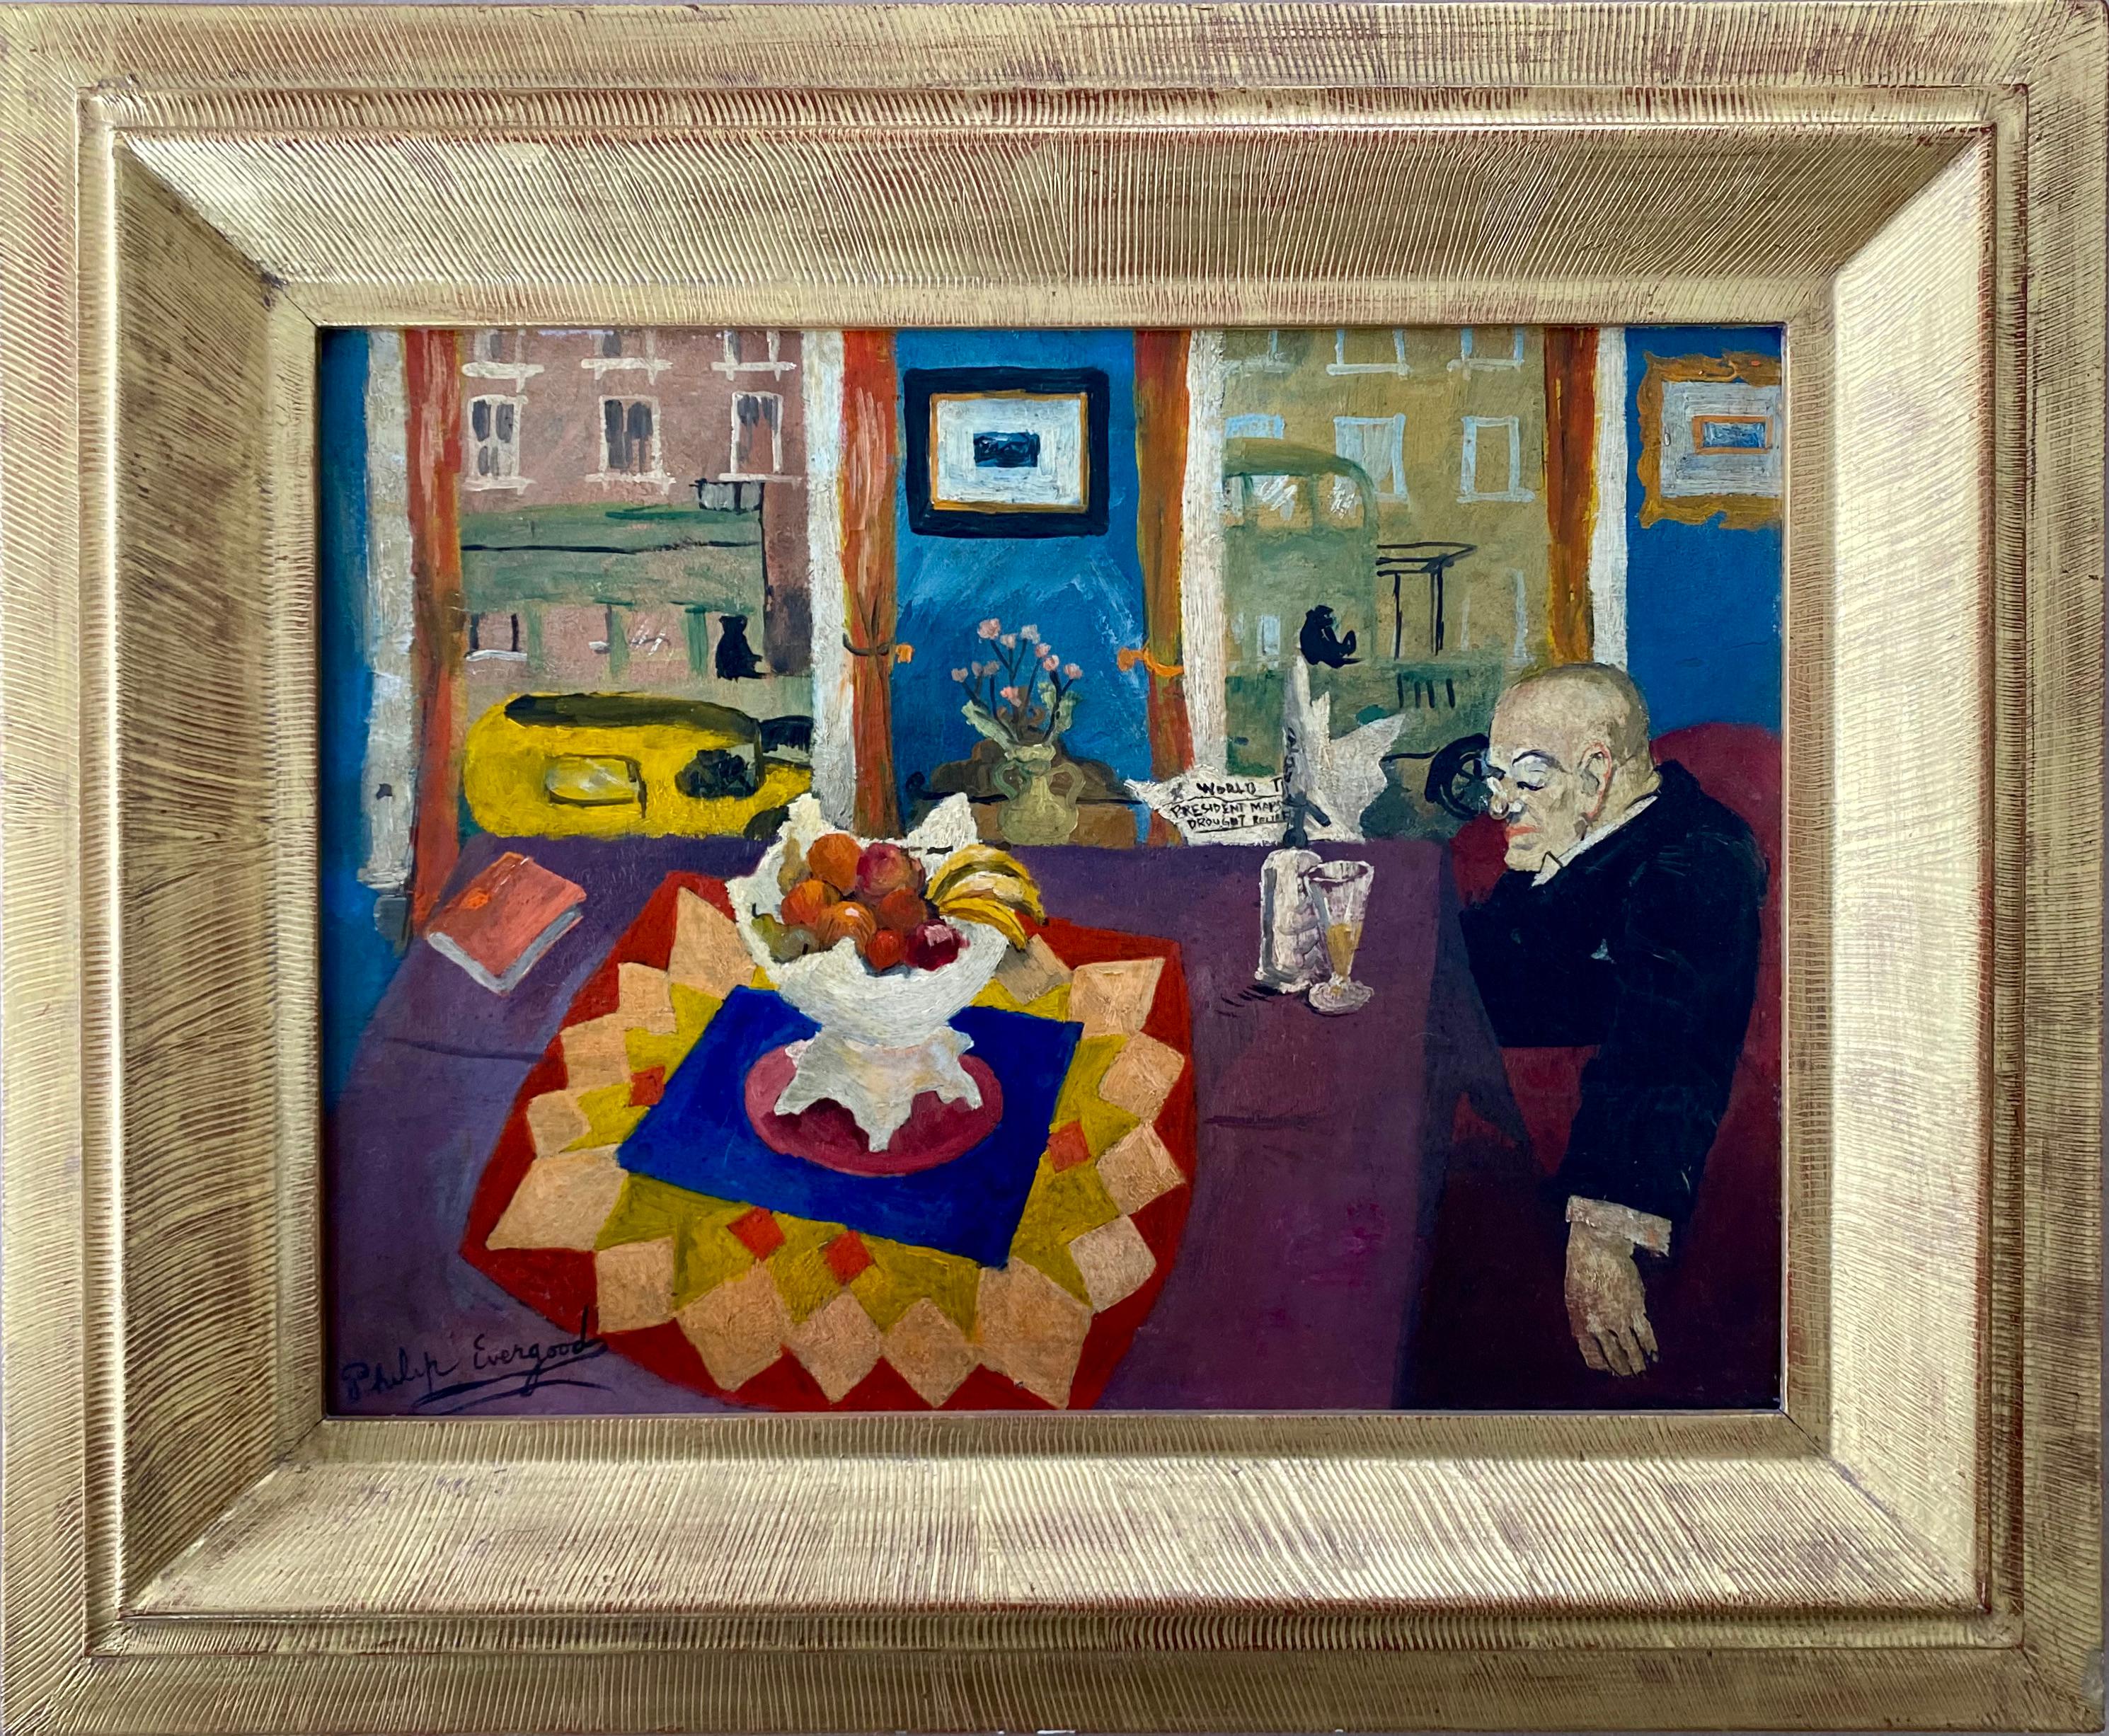 Interieur mit Mann am Tisch Amerikanischer Modernismus WPA Sozialer Realismus Moderne Malerei

Philip Evergood (1901 - 1973) Ohne Titel (Interieur mit Mann am Tisch), um 1932, Öl auf Tafel, 11 1/2 x 15 3/4 Zoll. Signiert unten links. Provenienz: